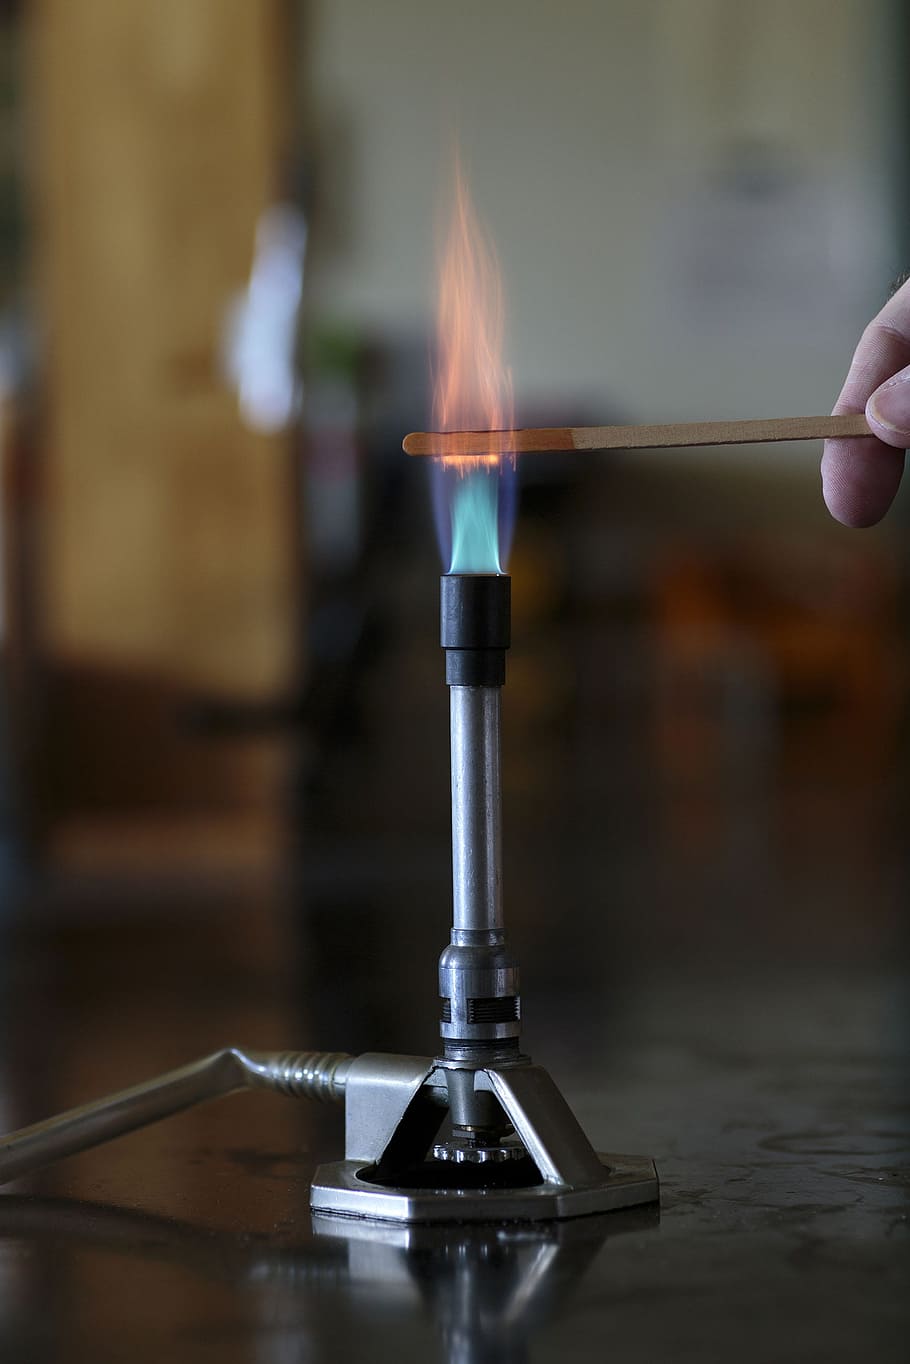 solução de cobalto, queima, madeira, tala, chama do queimador de bunsen, chama., química, chama, metais, sais